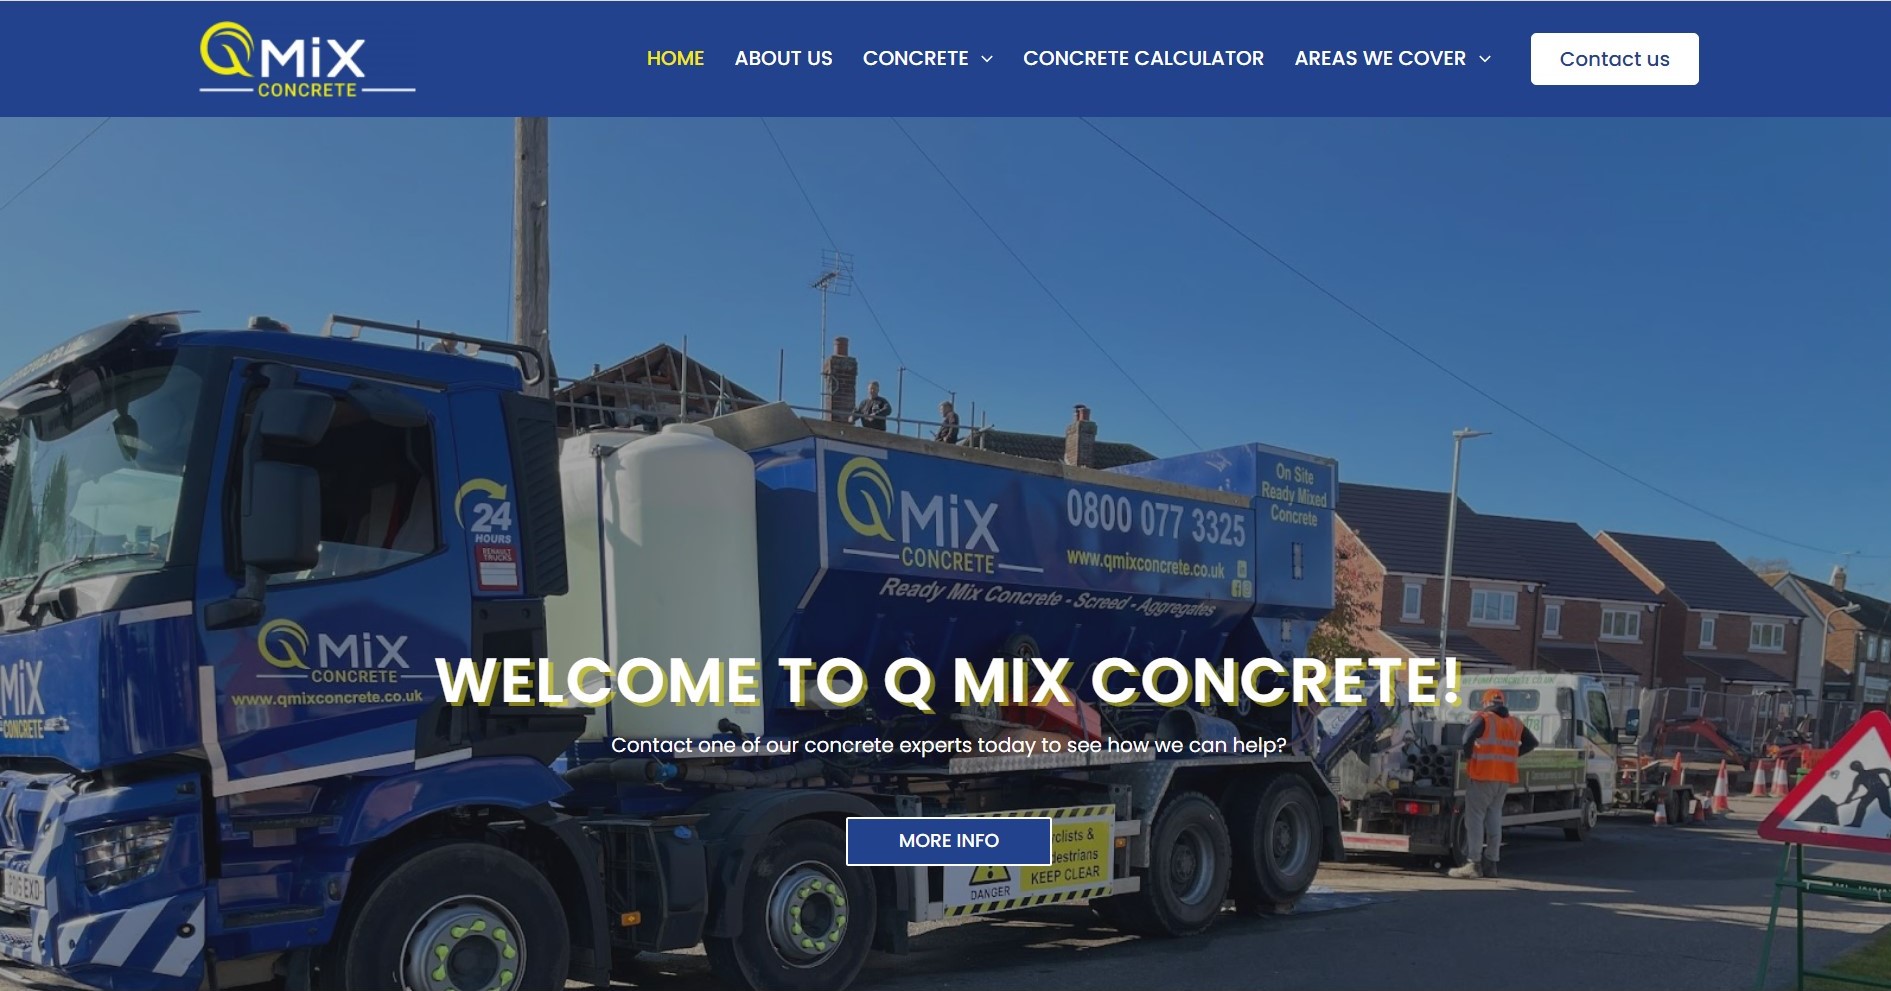 Main image for Q Mix Concrete